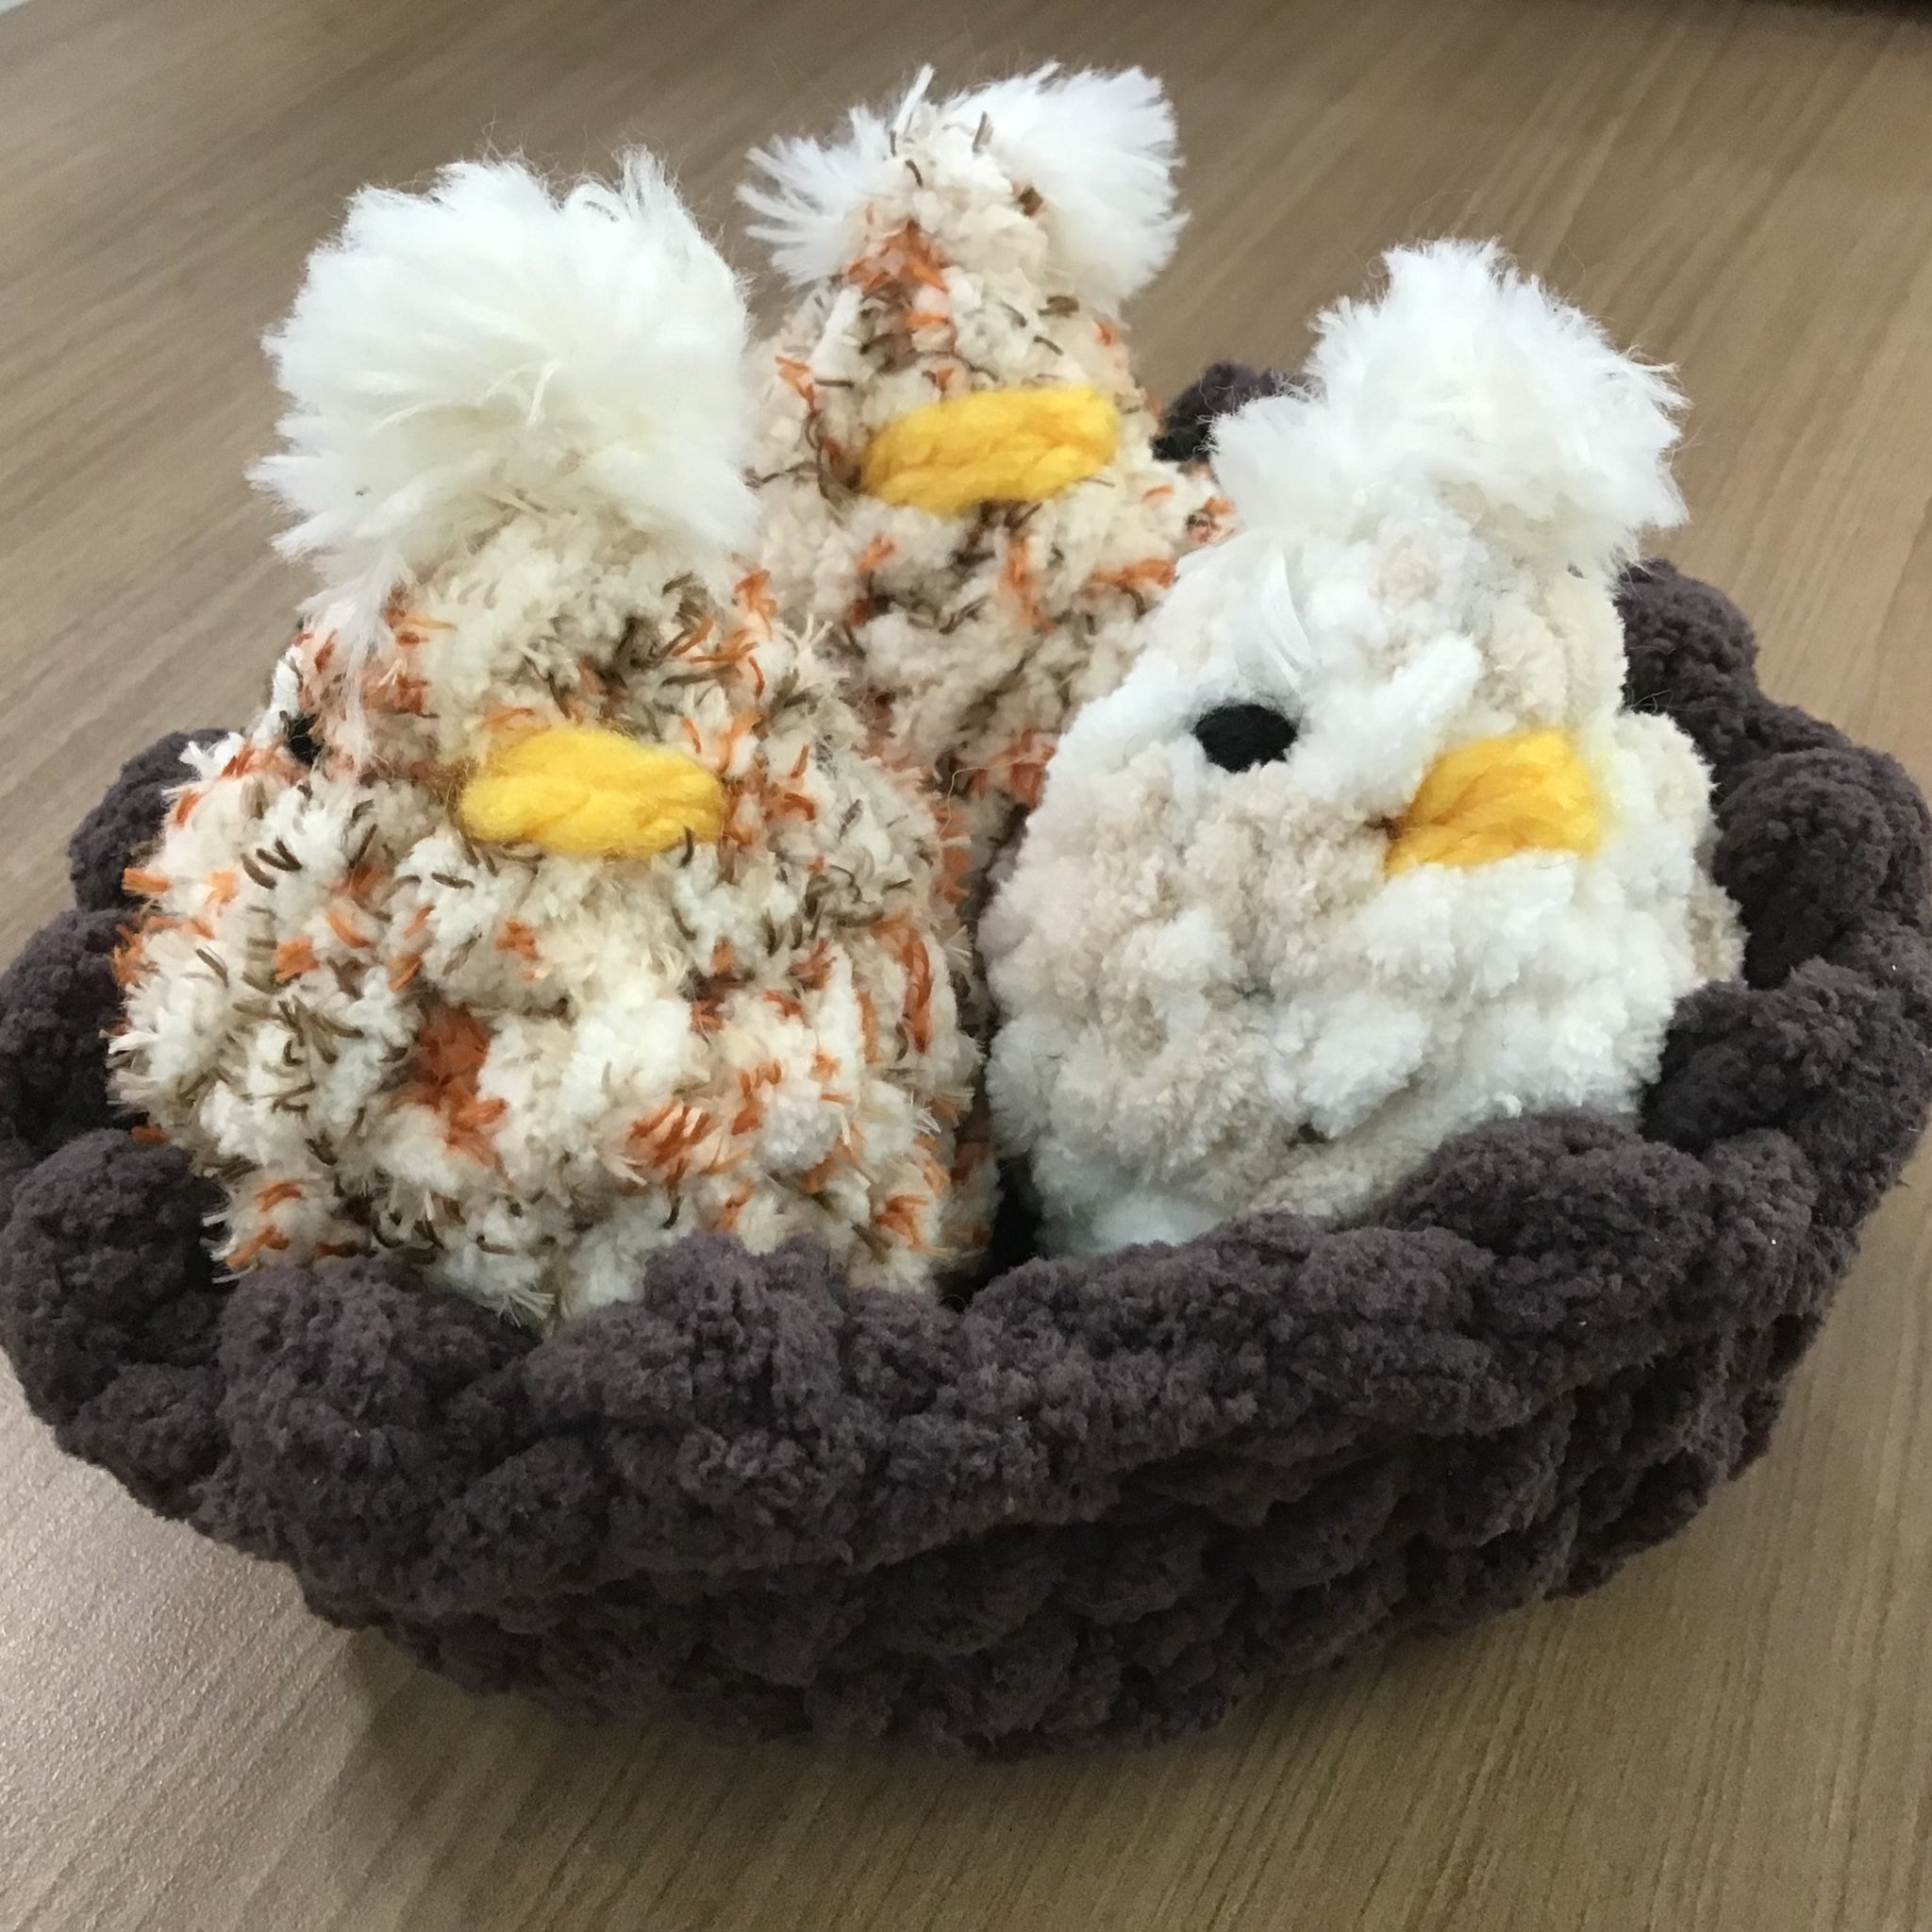 Chicks in Nest